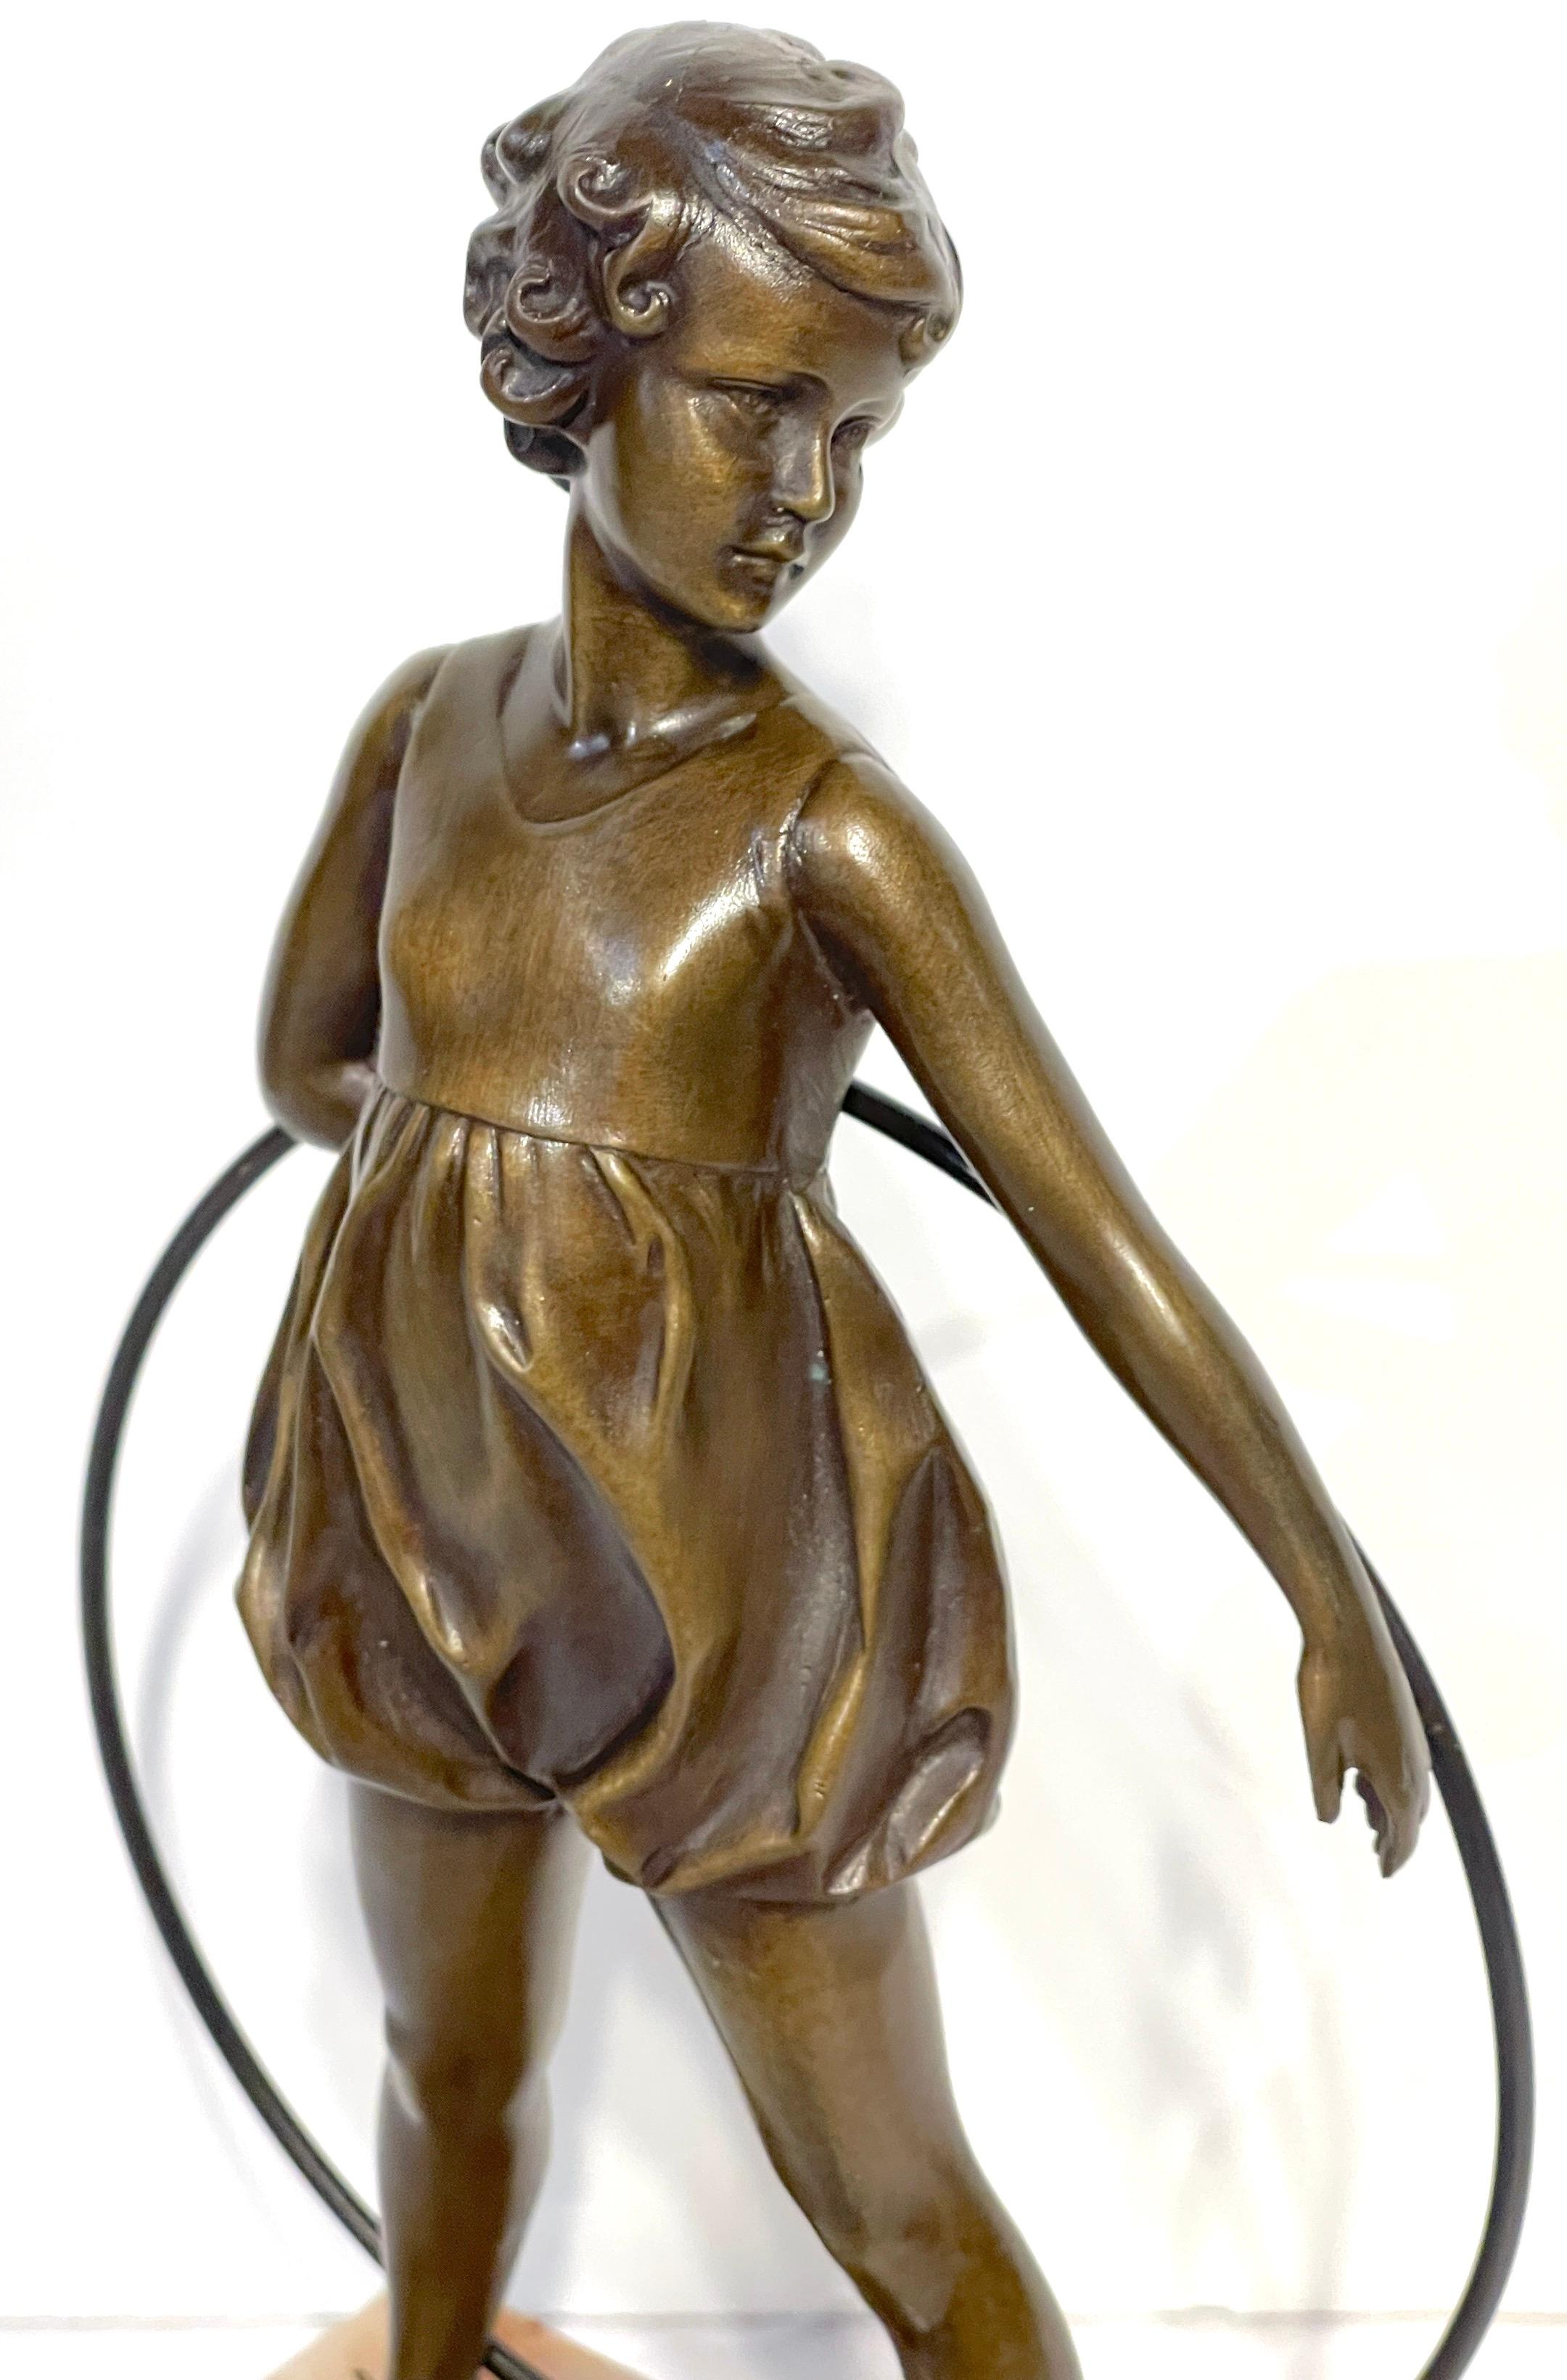 'Hoop Girl' Art Deco Bronze Sculpture Signed Ferdinand Preiss (1882-1943) For Sale 5